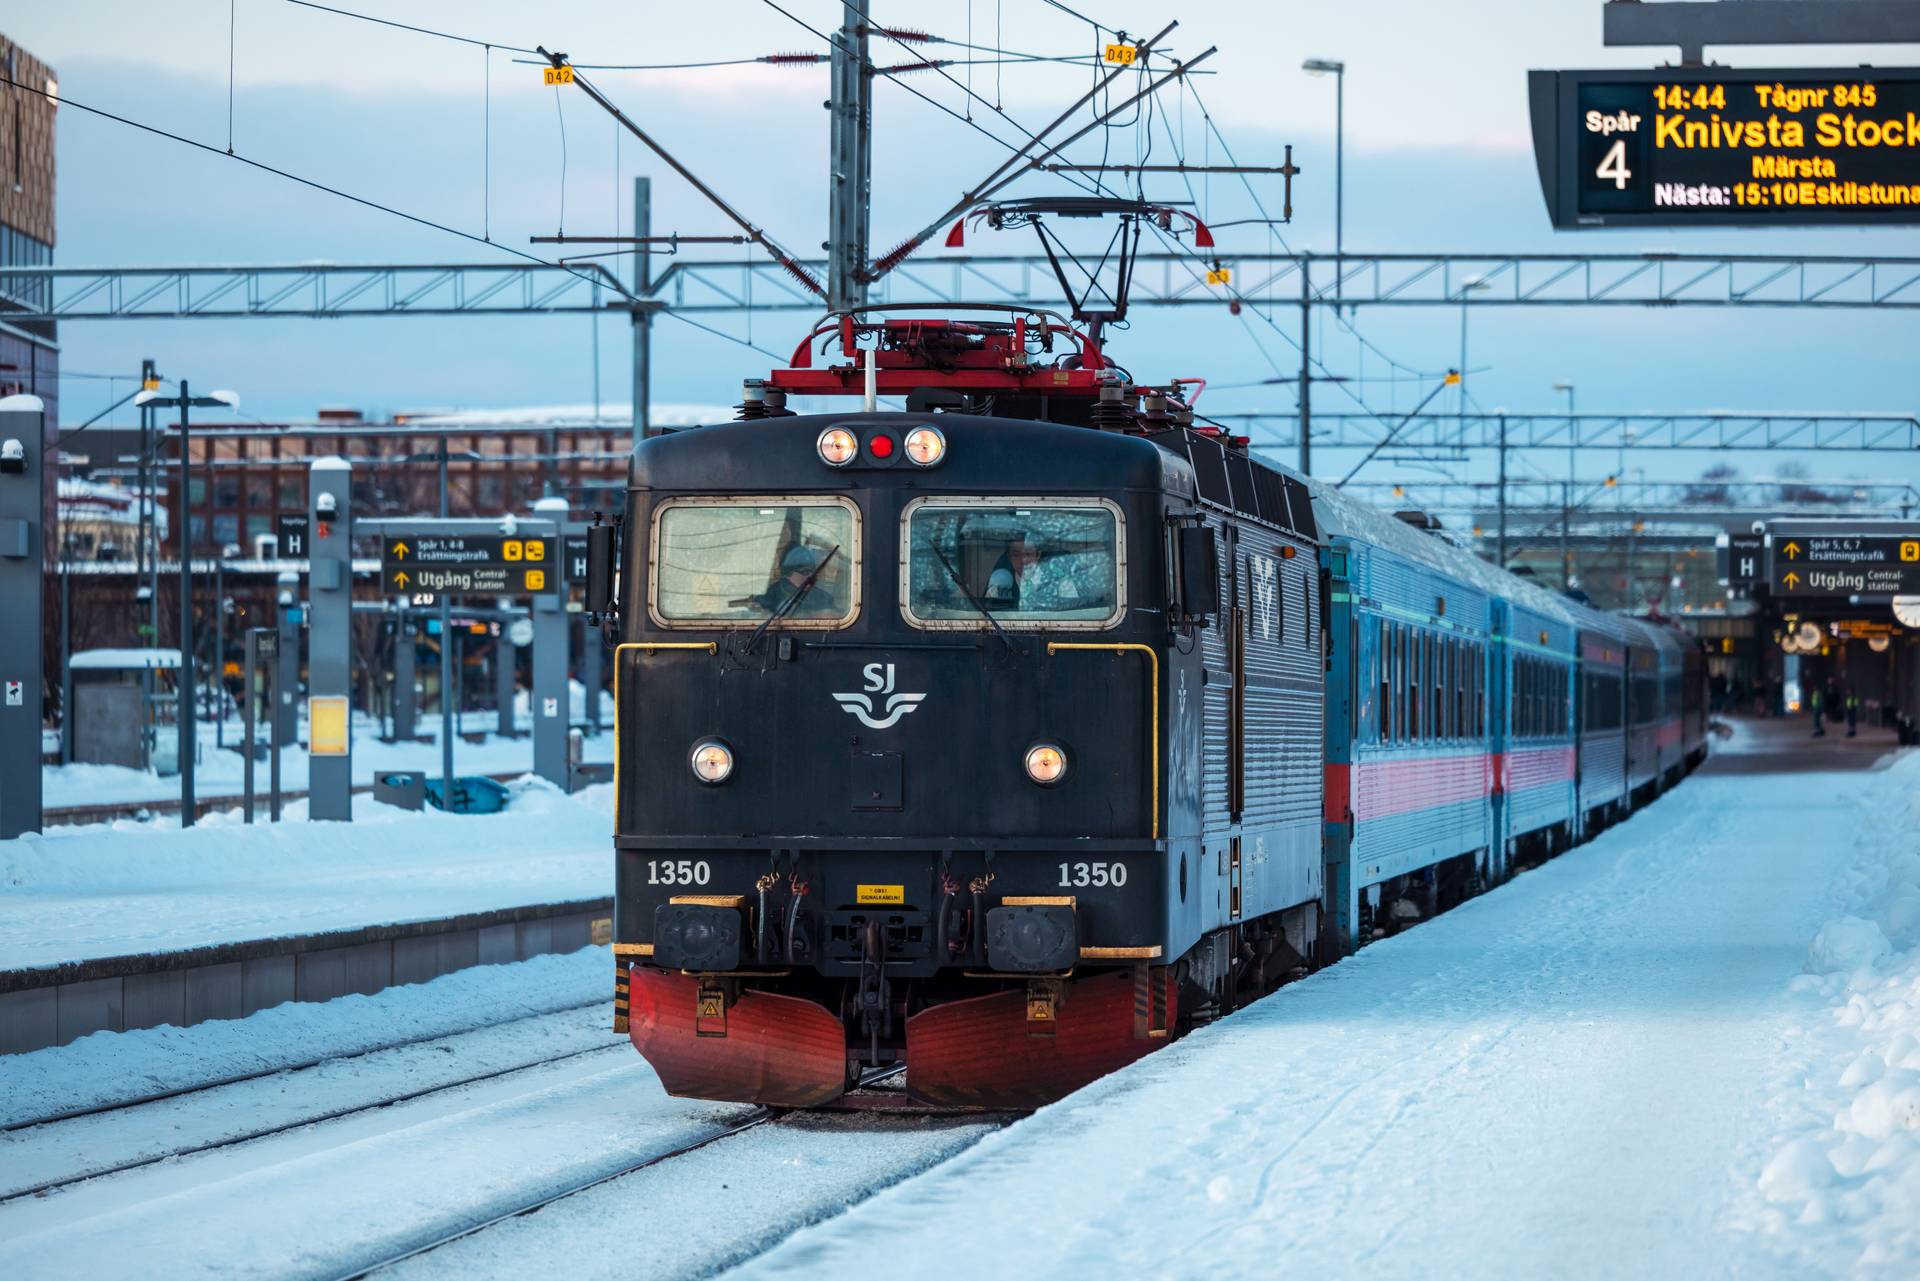 DN Ledare: Pinsamt att man i Sverige inte kan lita på att tågen går